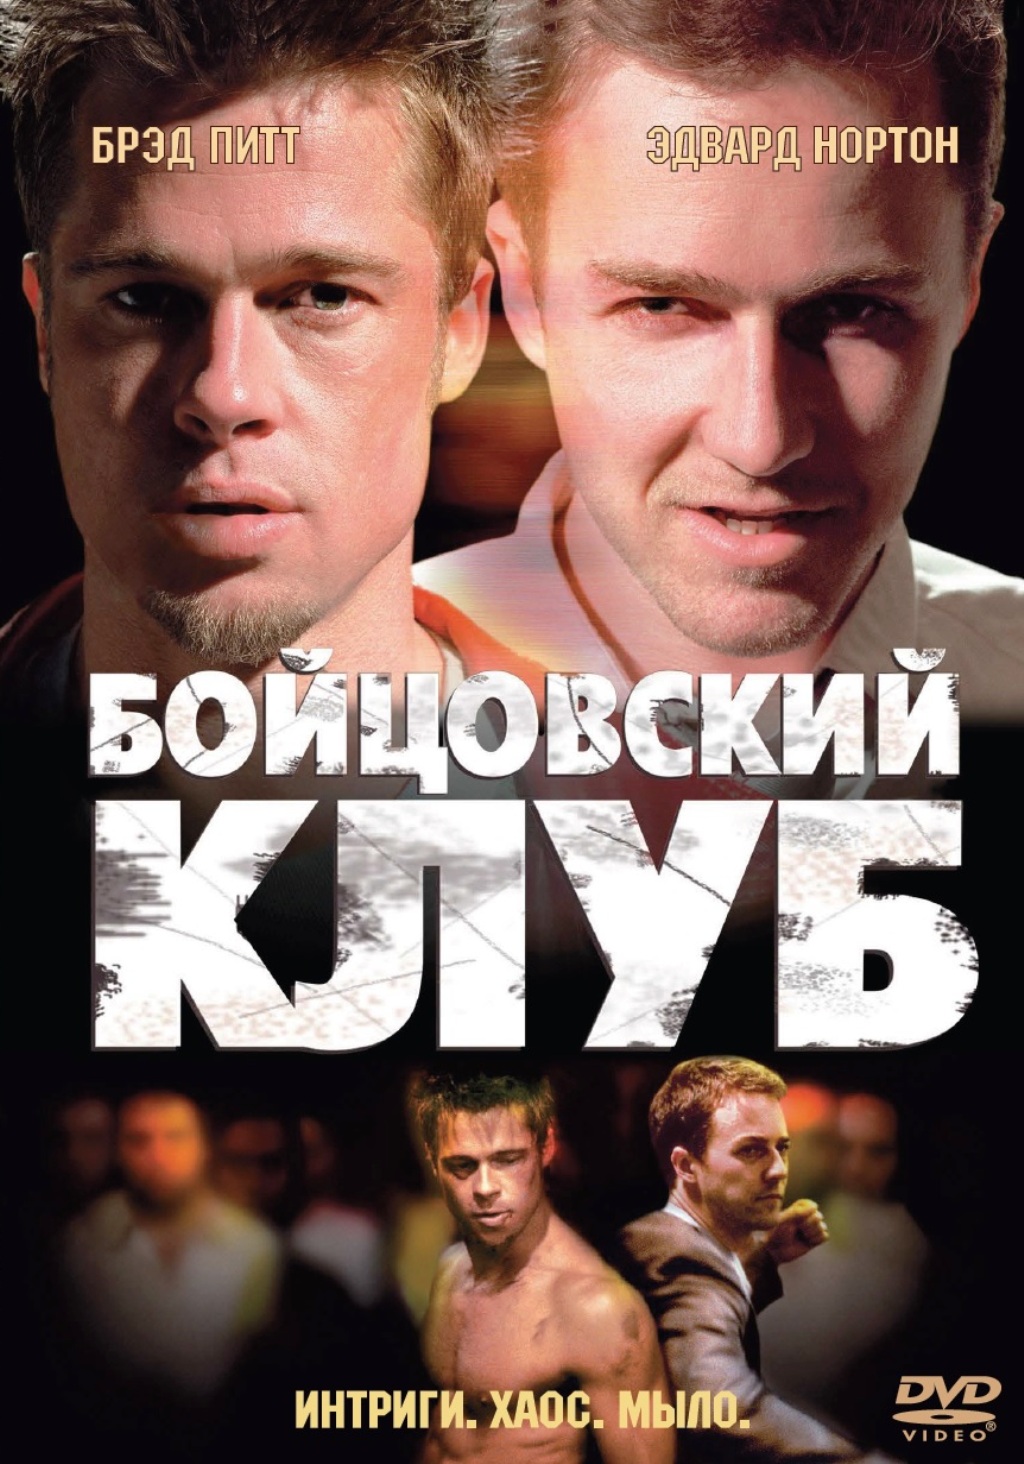 Бойцовский клуб (DVD)